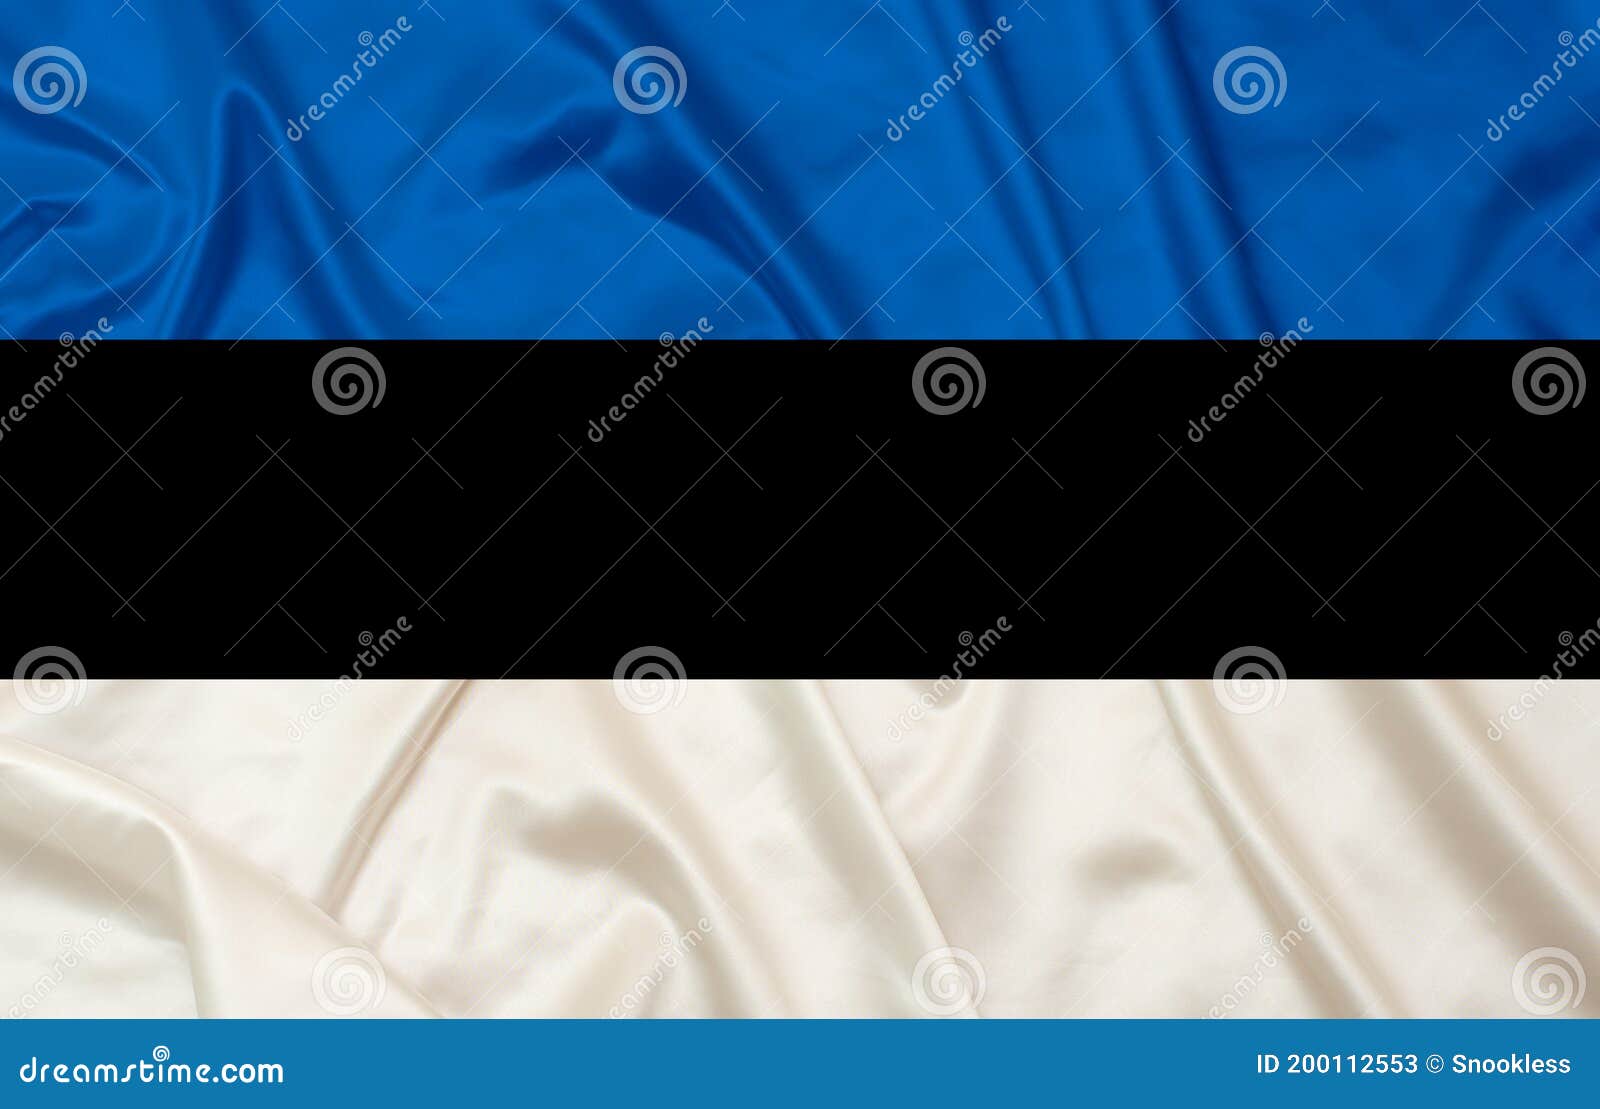 estonia silk flag